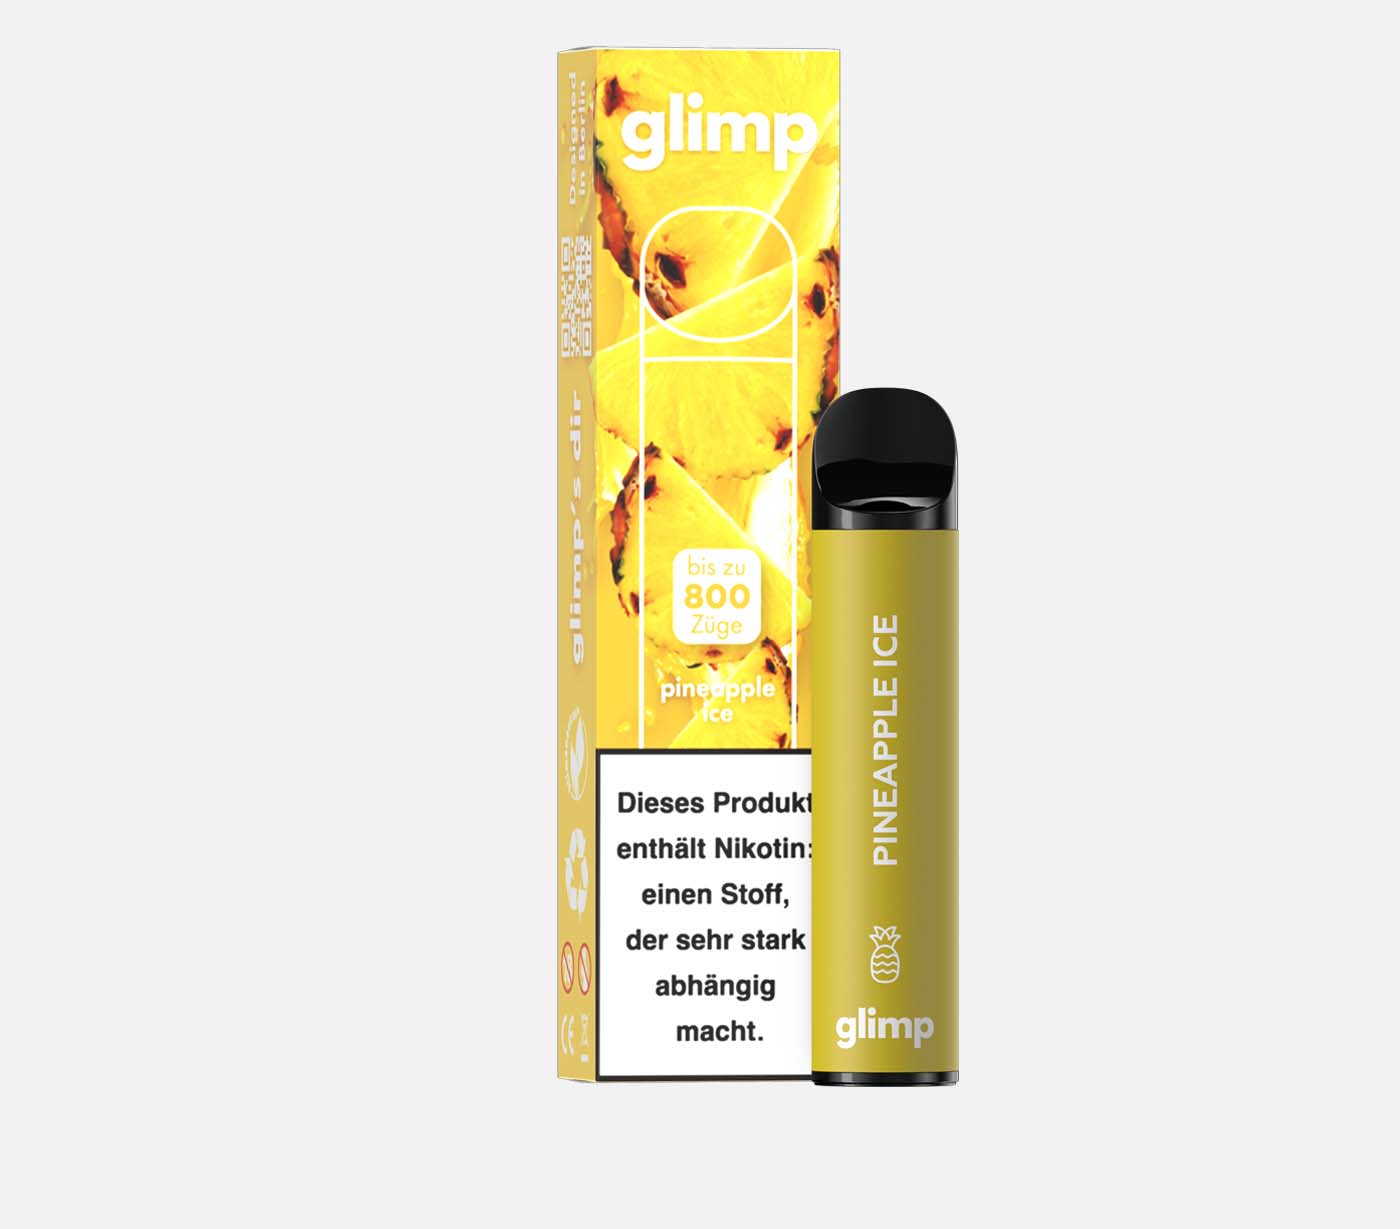 GLIMP 800 Pineapple Ice Einweg E-Zigarette